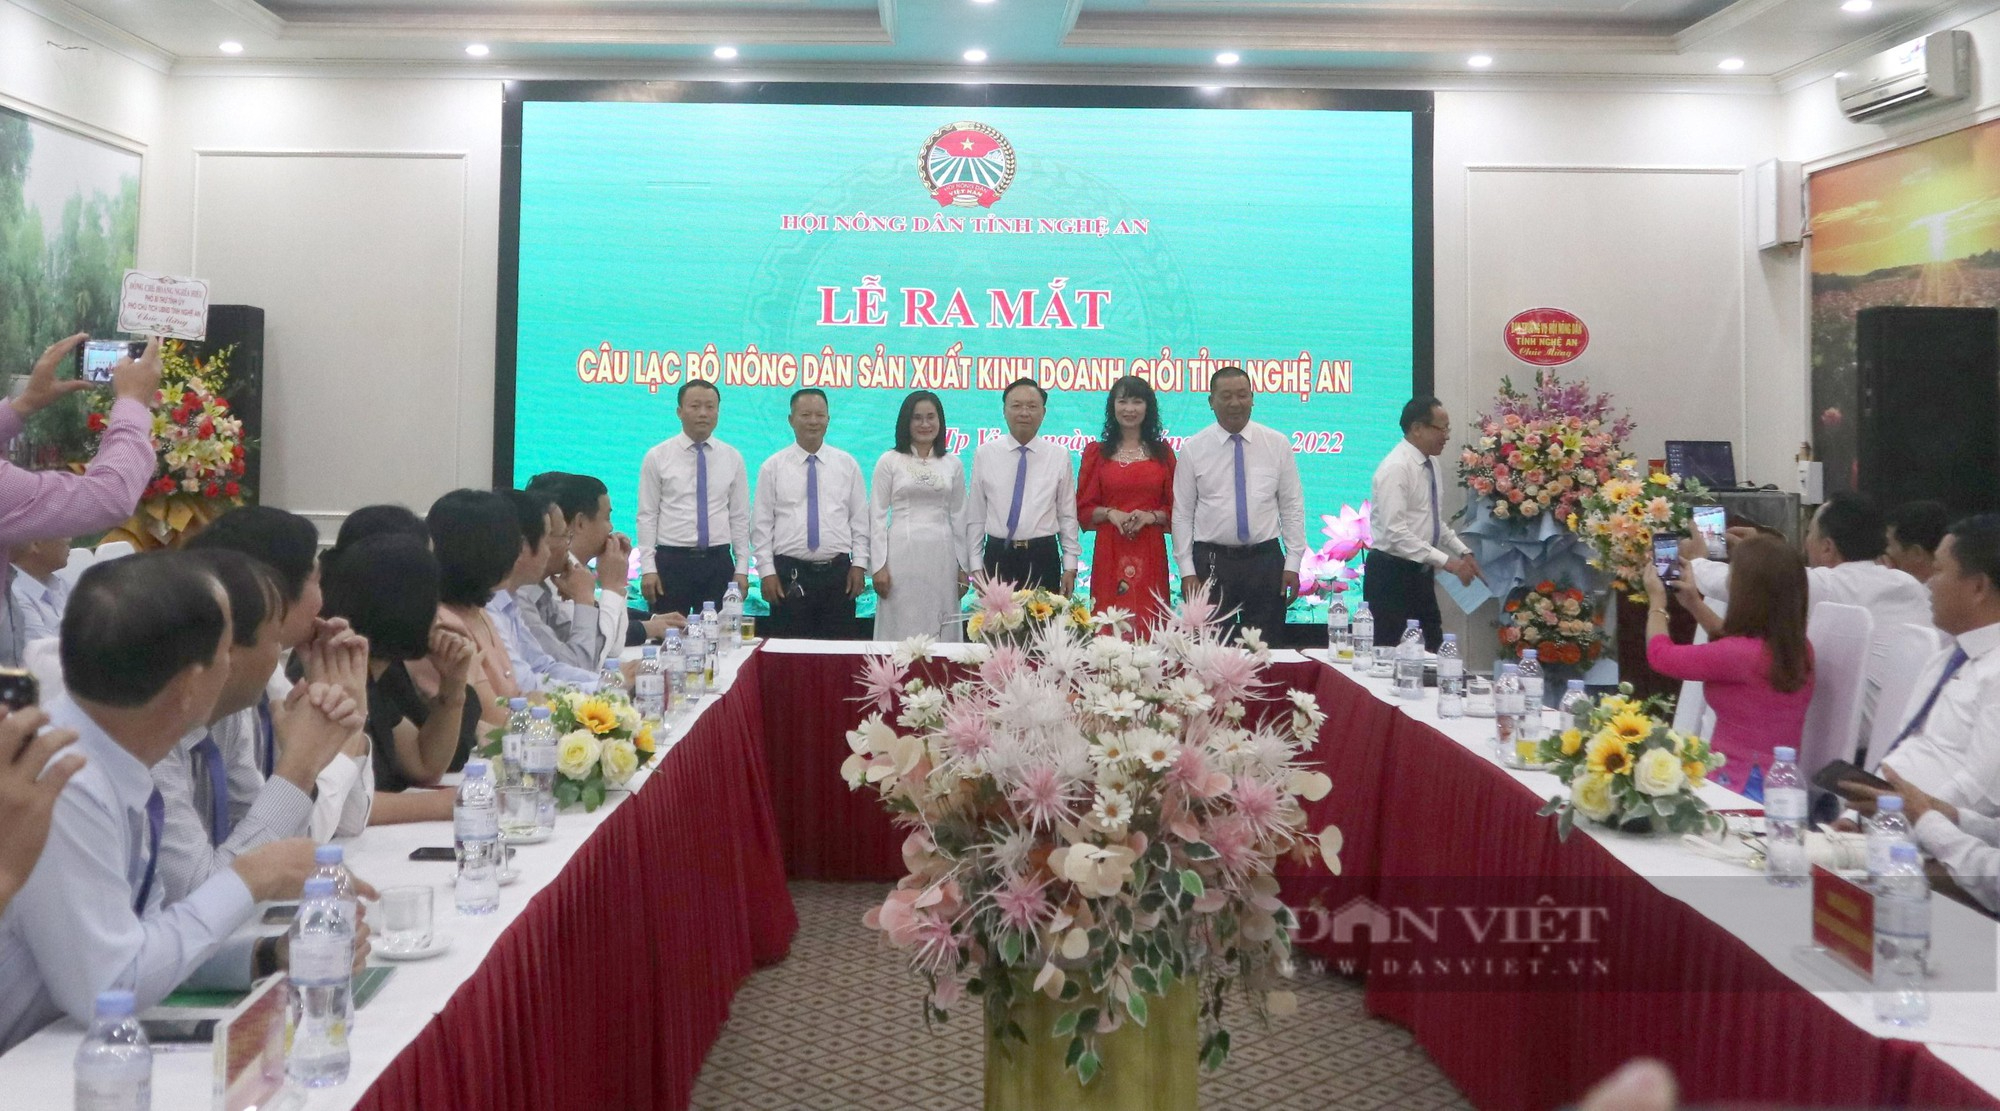 Ra mắt câu lạc bộ nông dân sản xuất kinh doanh giỏi tỉnh Nghệ An - Ảnh 2.